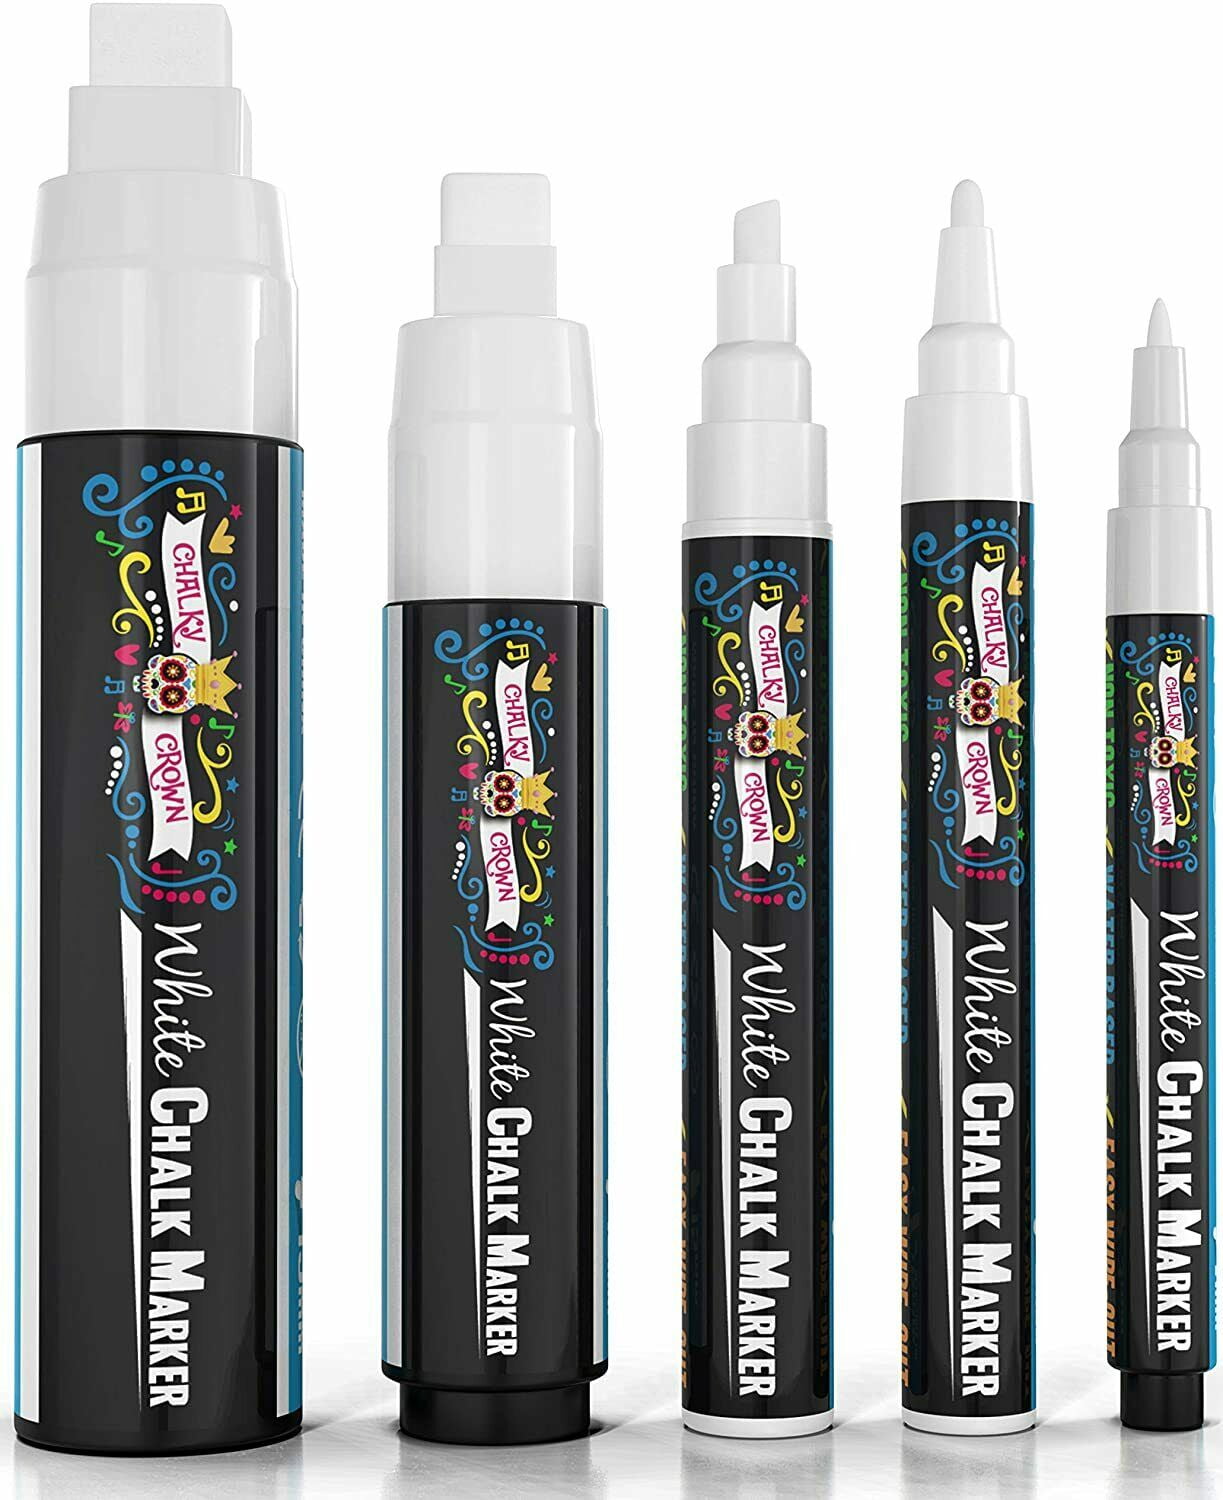  Liquid Chalk Markers - Set of 8 6 mm Fine Tip Chalk Pen + free  24x Chalkboard Stickers - Whiteboard Markers, chalkboard markers, Dry Erase  Markers, Glass Markers, Window Markers for